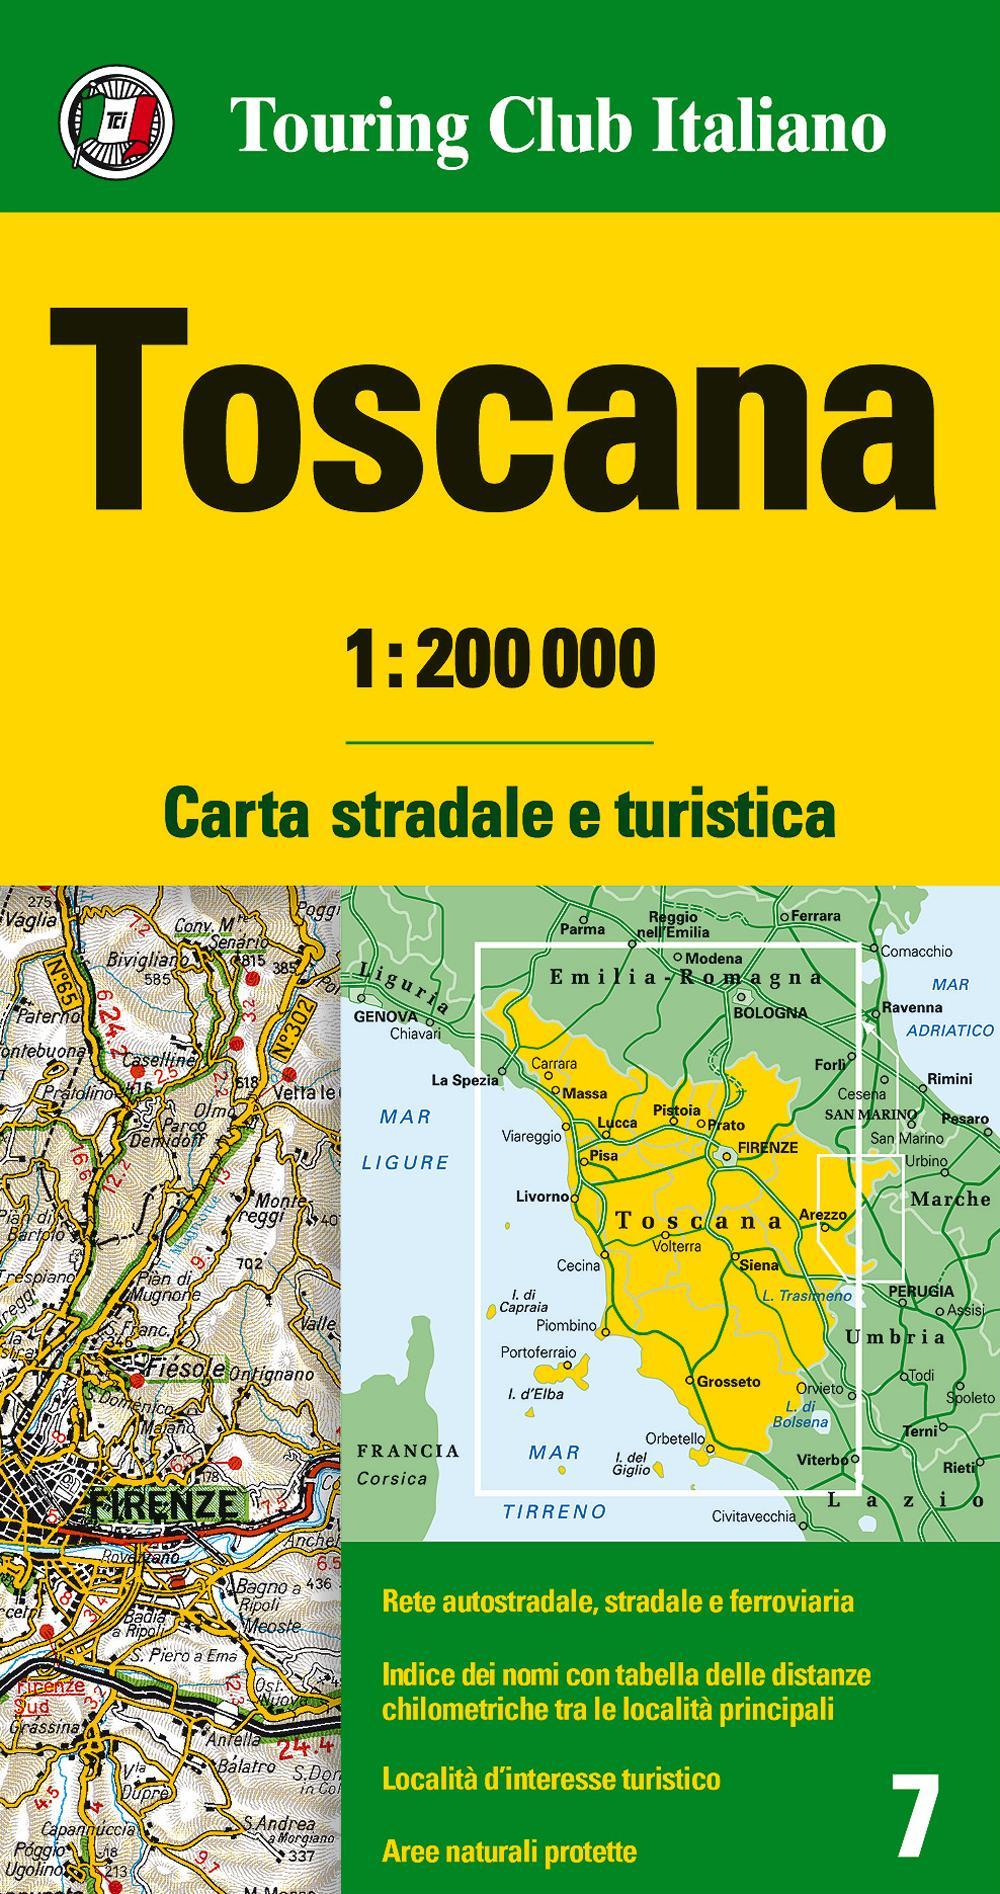 Toscana 1:200.000. Carta stradale e turistica